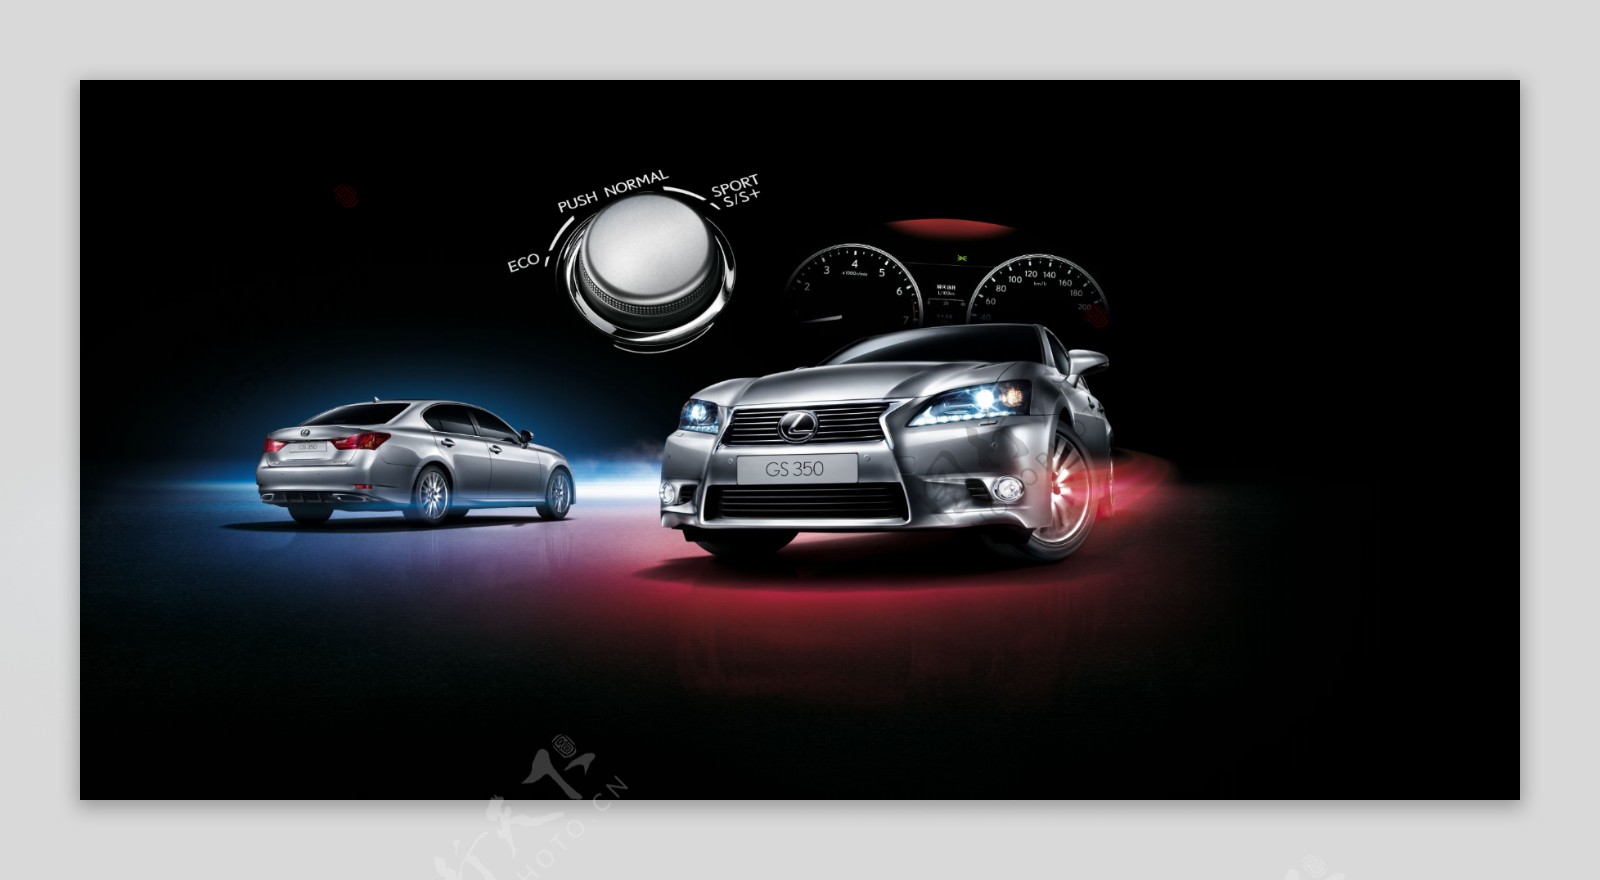 雷克萨斯2012年新款gs系列高档轿跑汽车高清大图图片